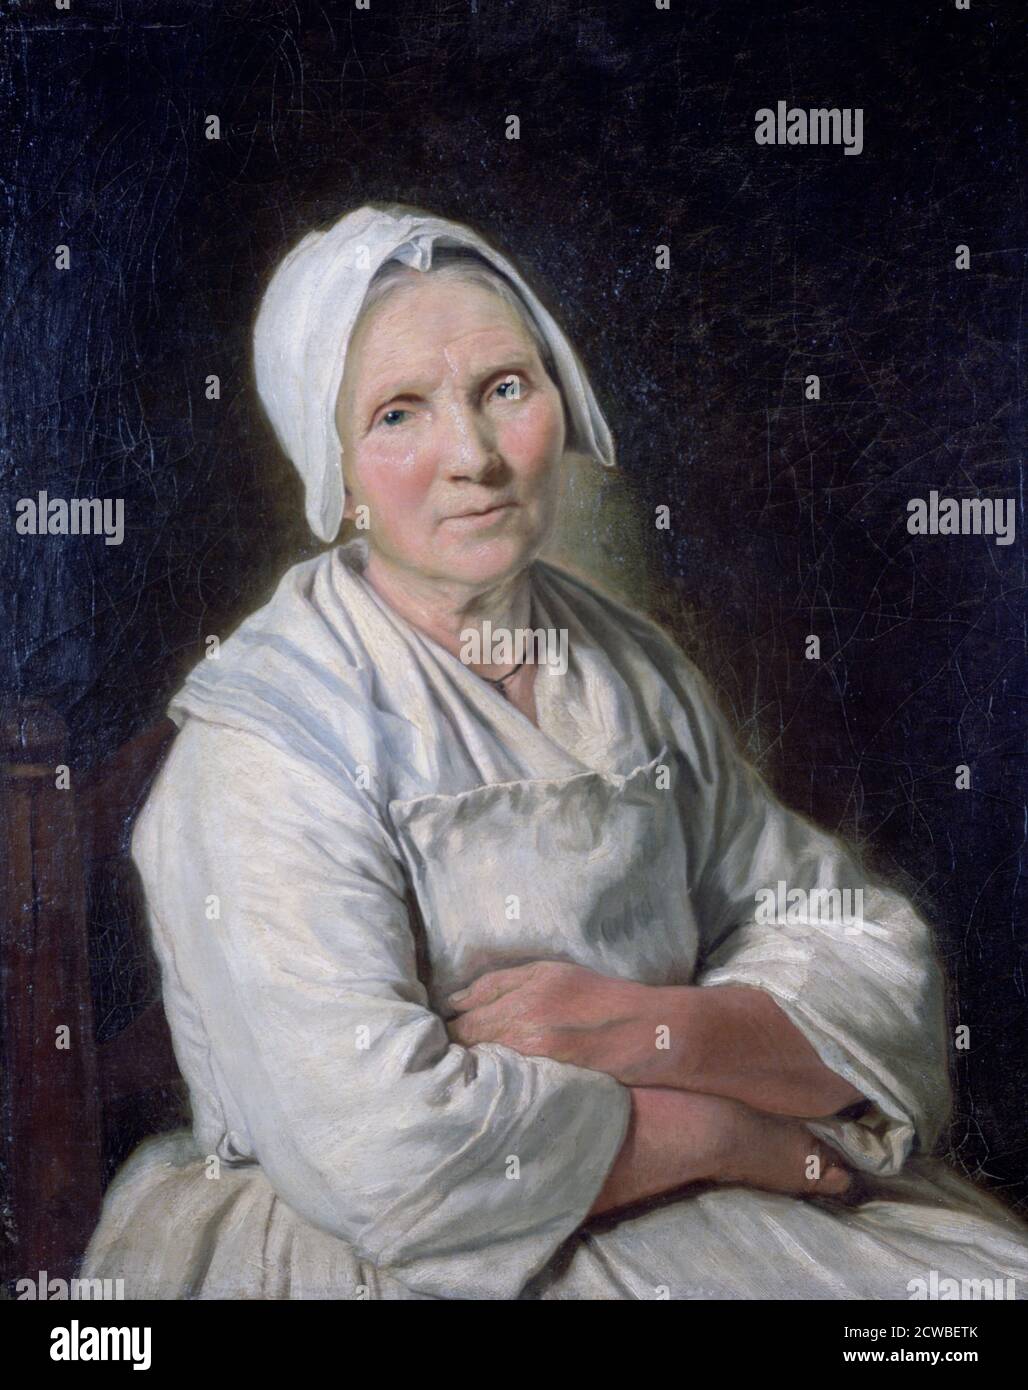 Mujer mayor', c1725-1778. Artista: Francois Duparc. Francoise Duparc  (1726-1778) fue una pintora barroca nacida en España que más tarde vivió en  Francia Fotografía de stock - Alamy